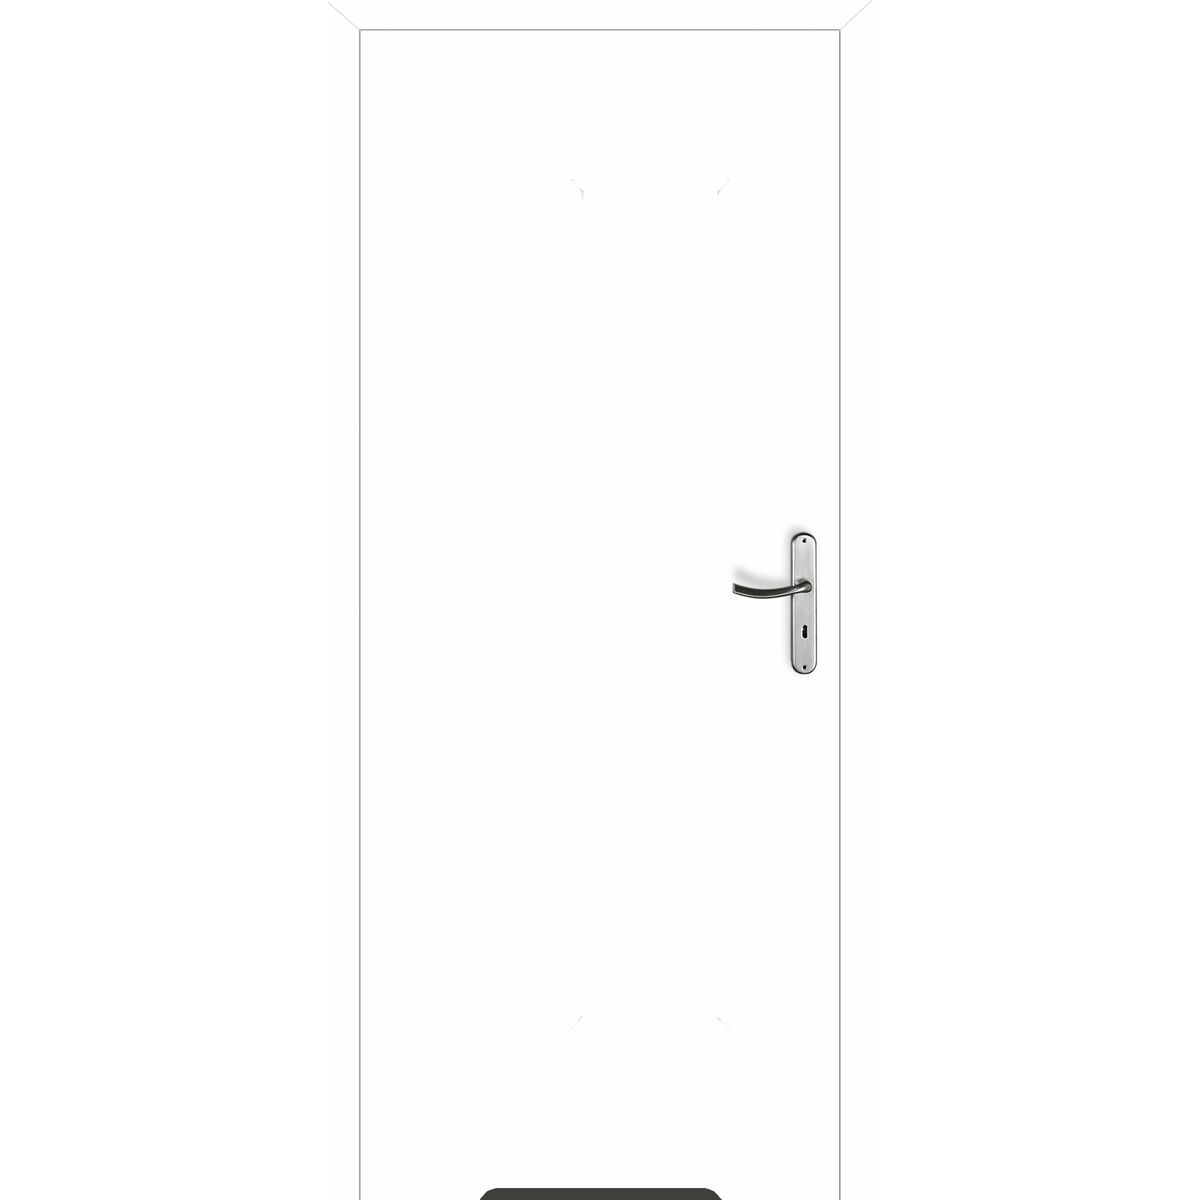 Drzwi wewnętrzne bezprzylgowe łazienkowe z podcięciem wentylacyjnym Max 80 uniwersalne białe FF Voster